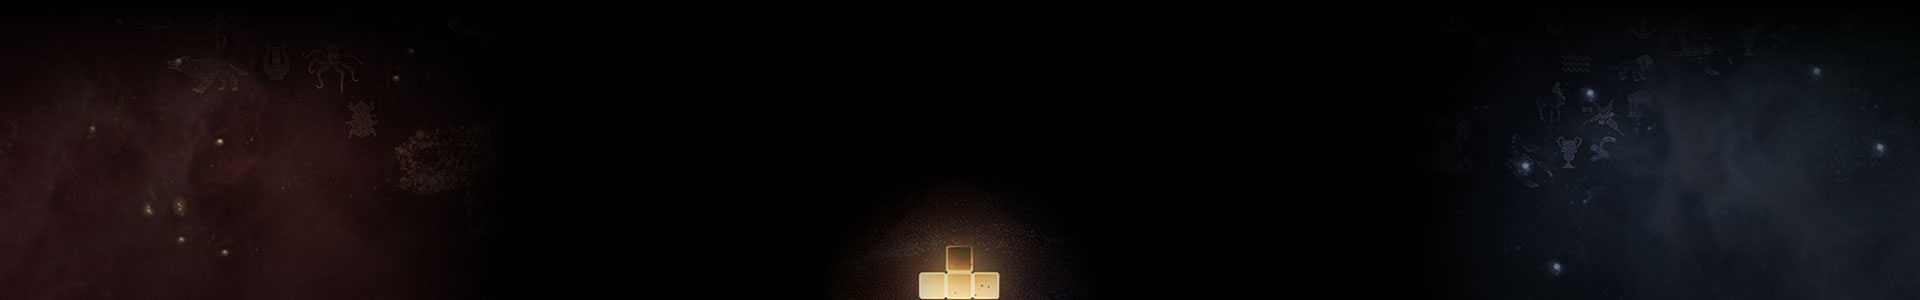 Una pieza brillante de Tetris entre estrellas.